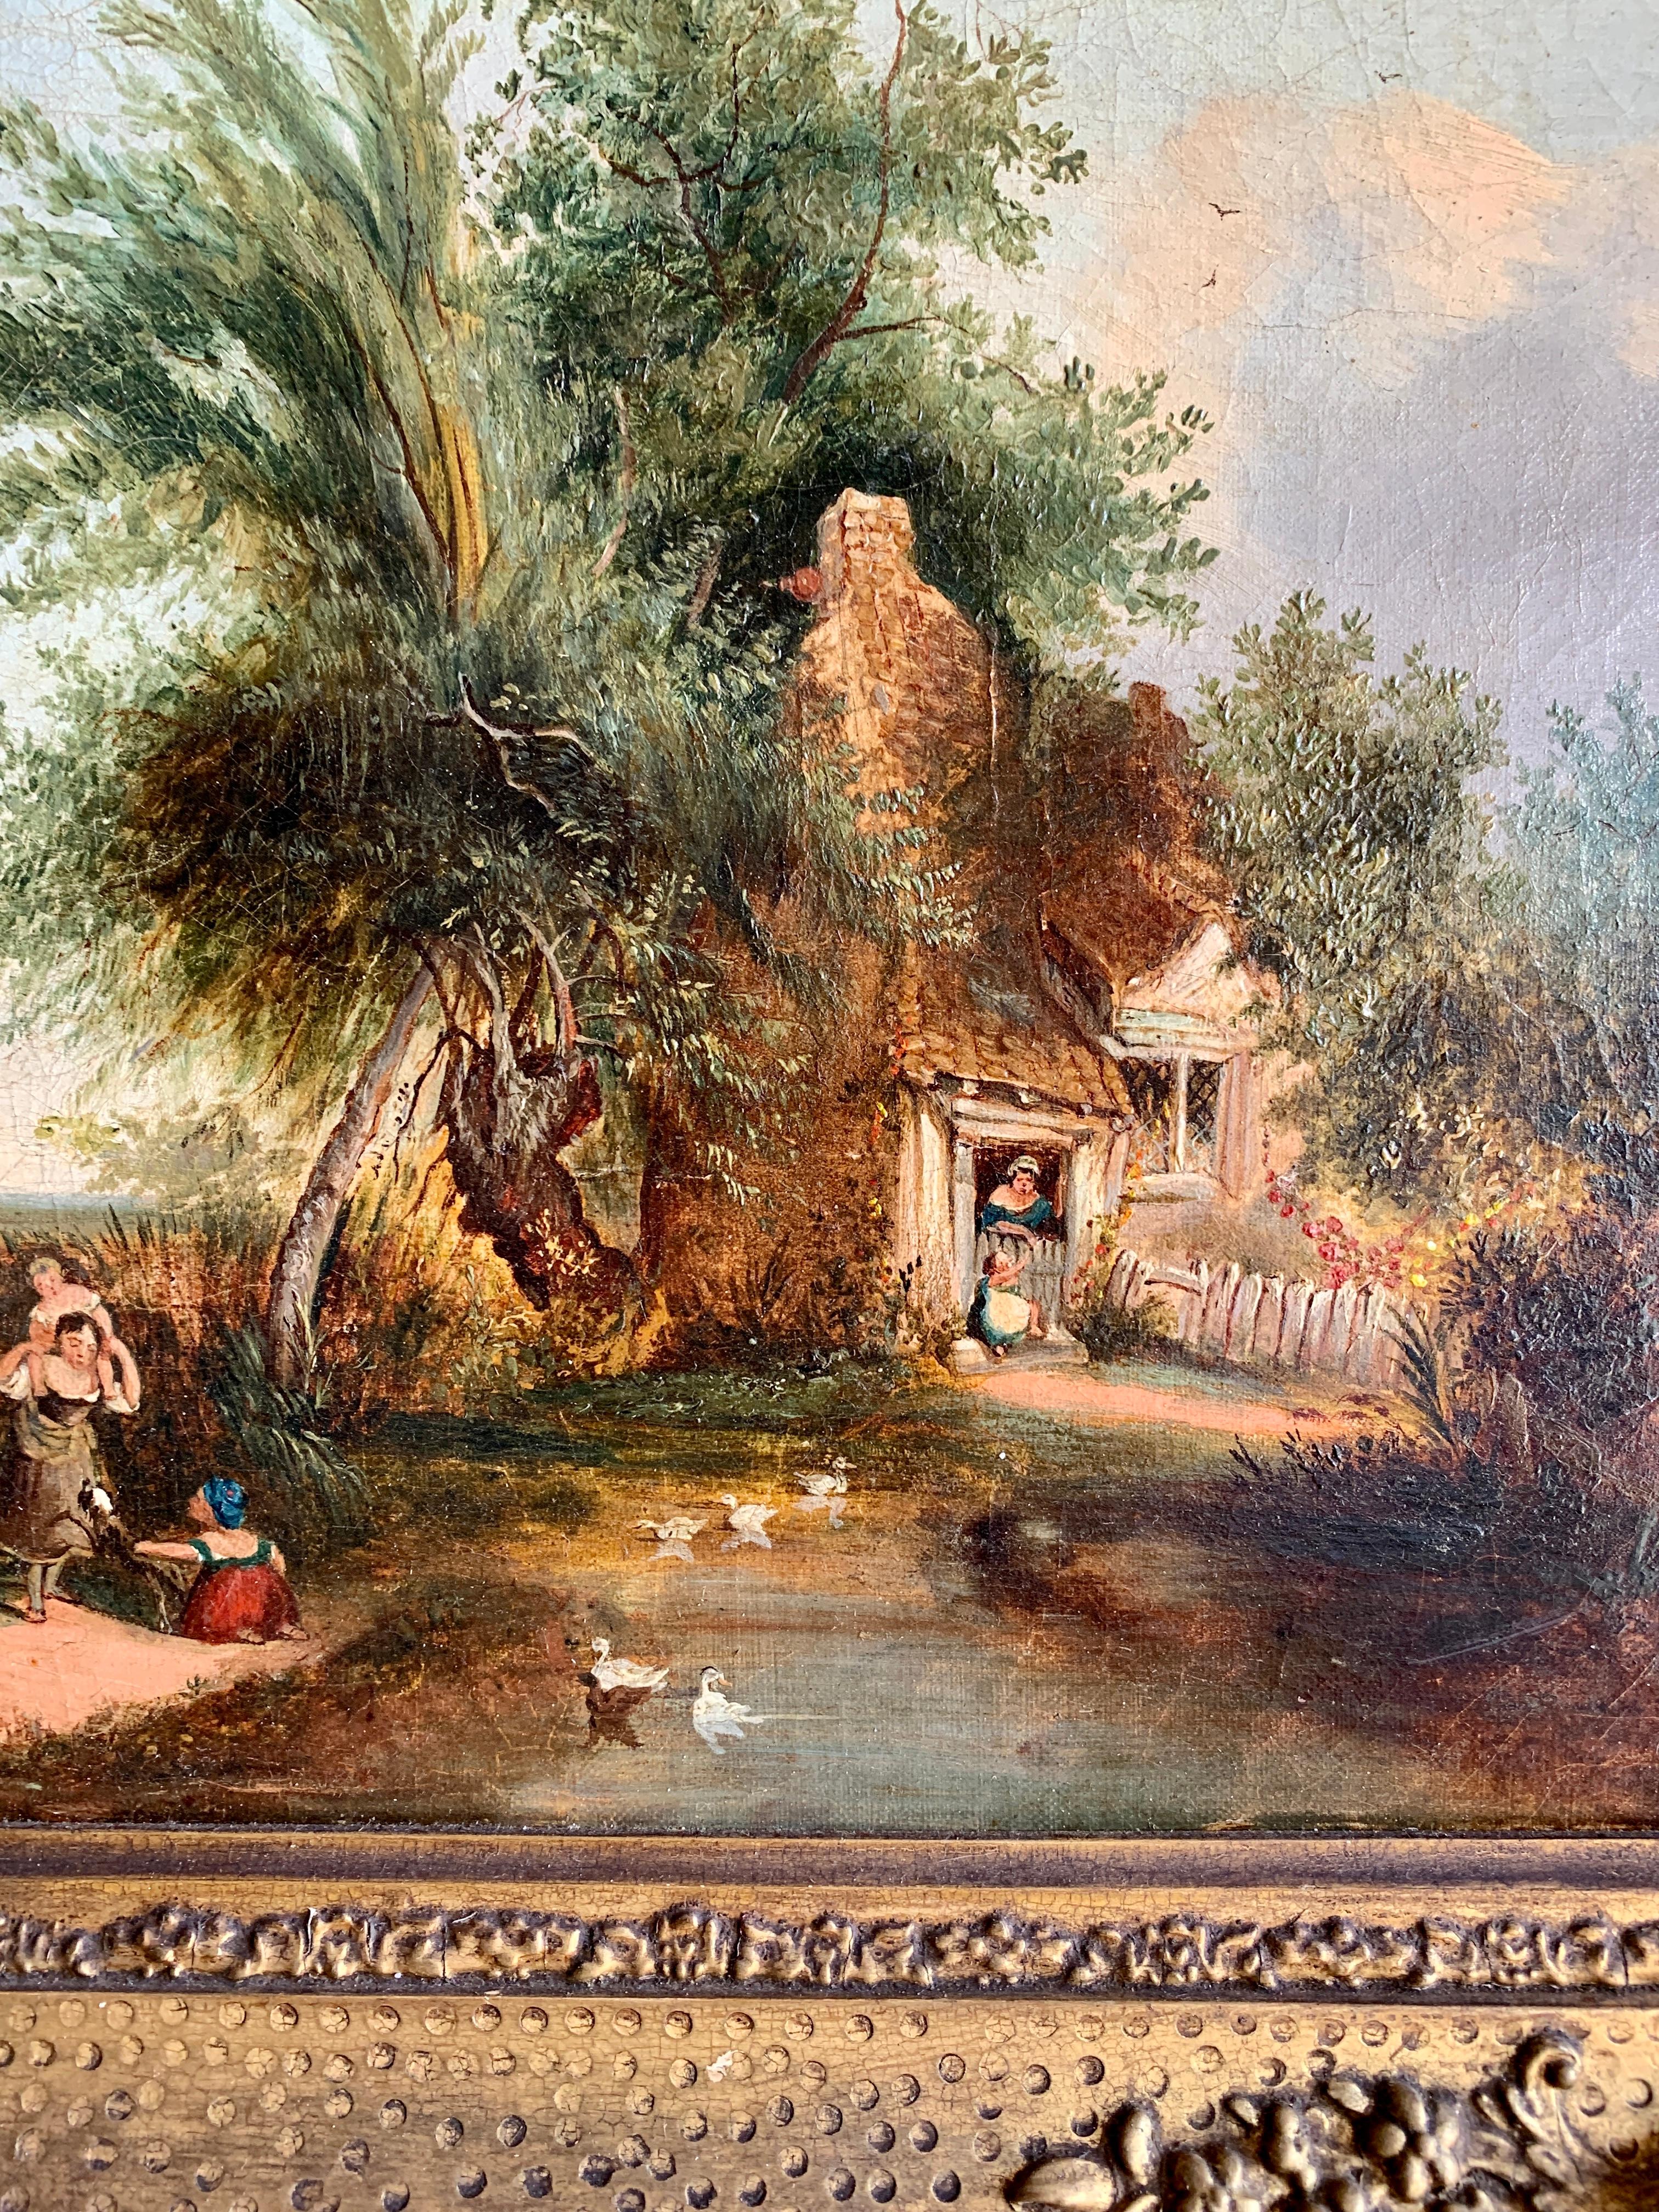 Englische Volkskunst- Cottage-Landschaft des 19. Jahrhunderts mit spielenden Figuren auf einem Teich – Painting von Unknown